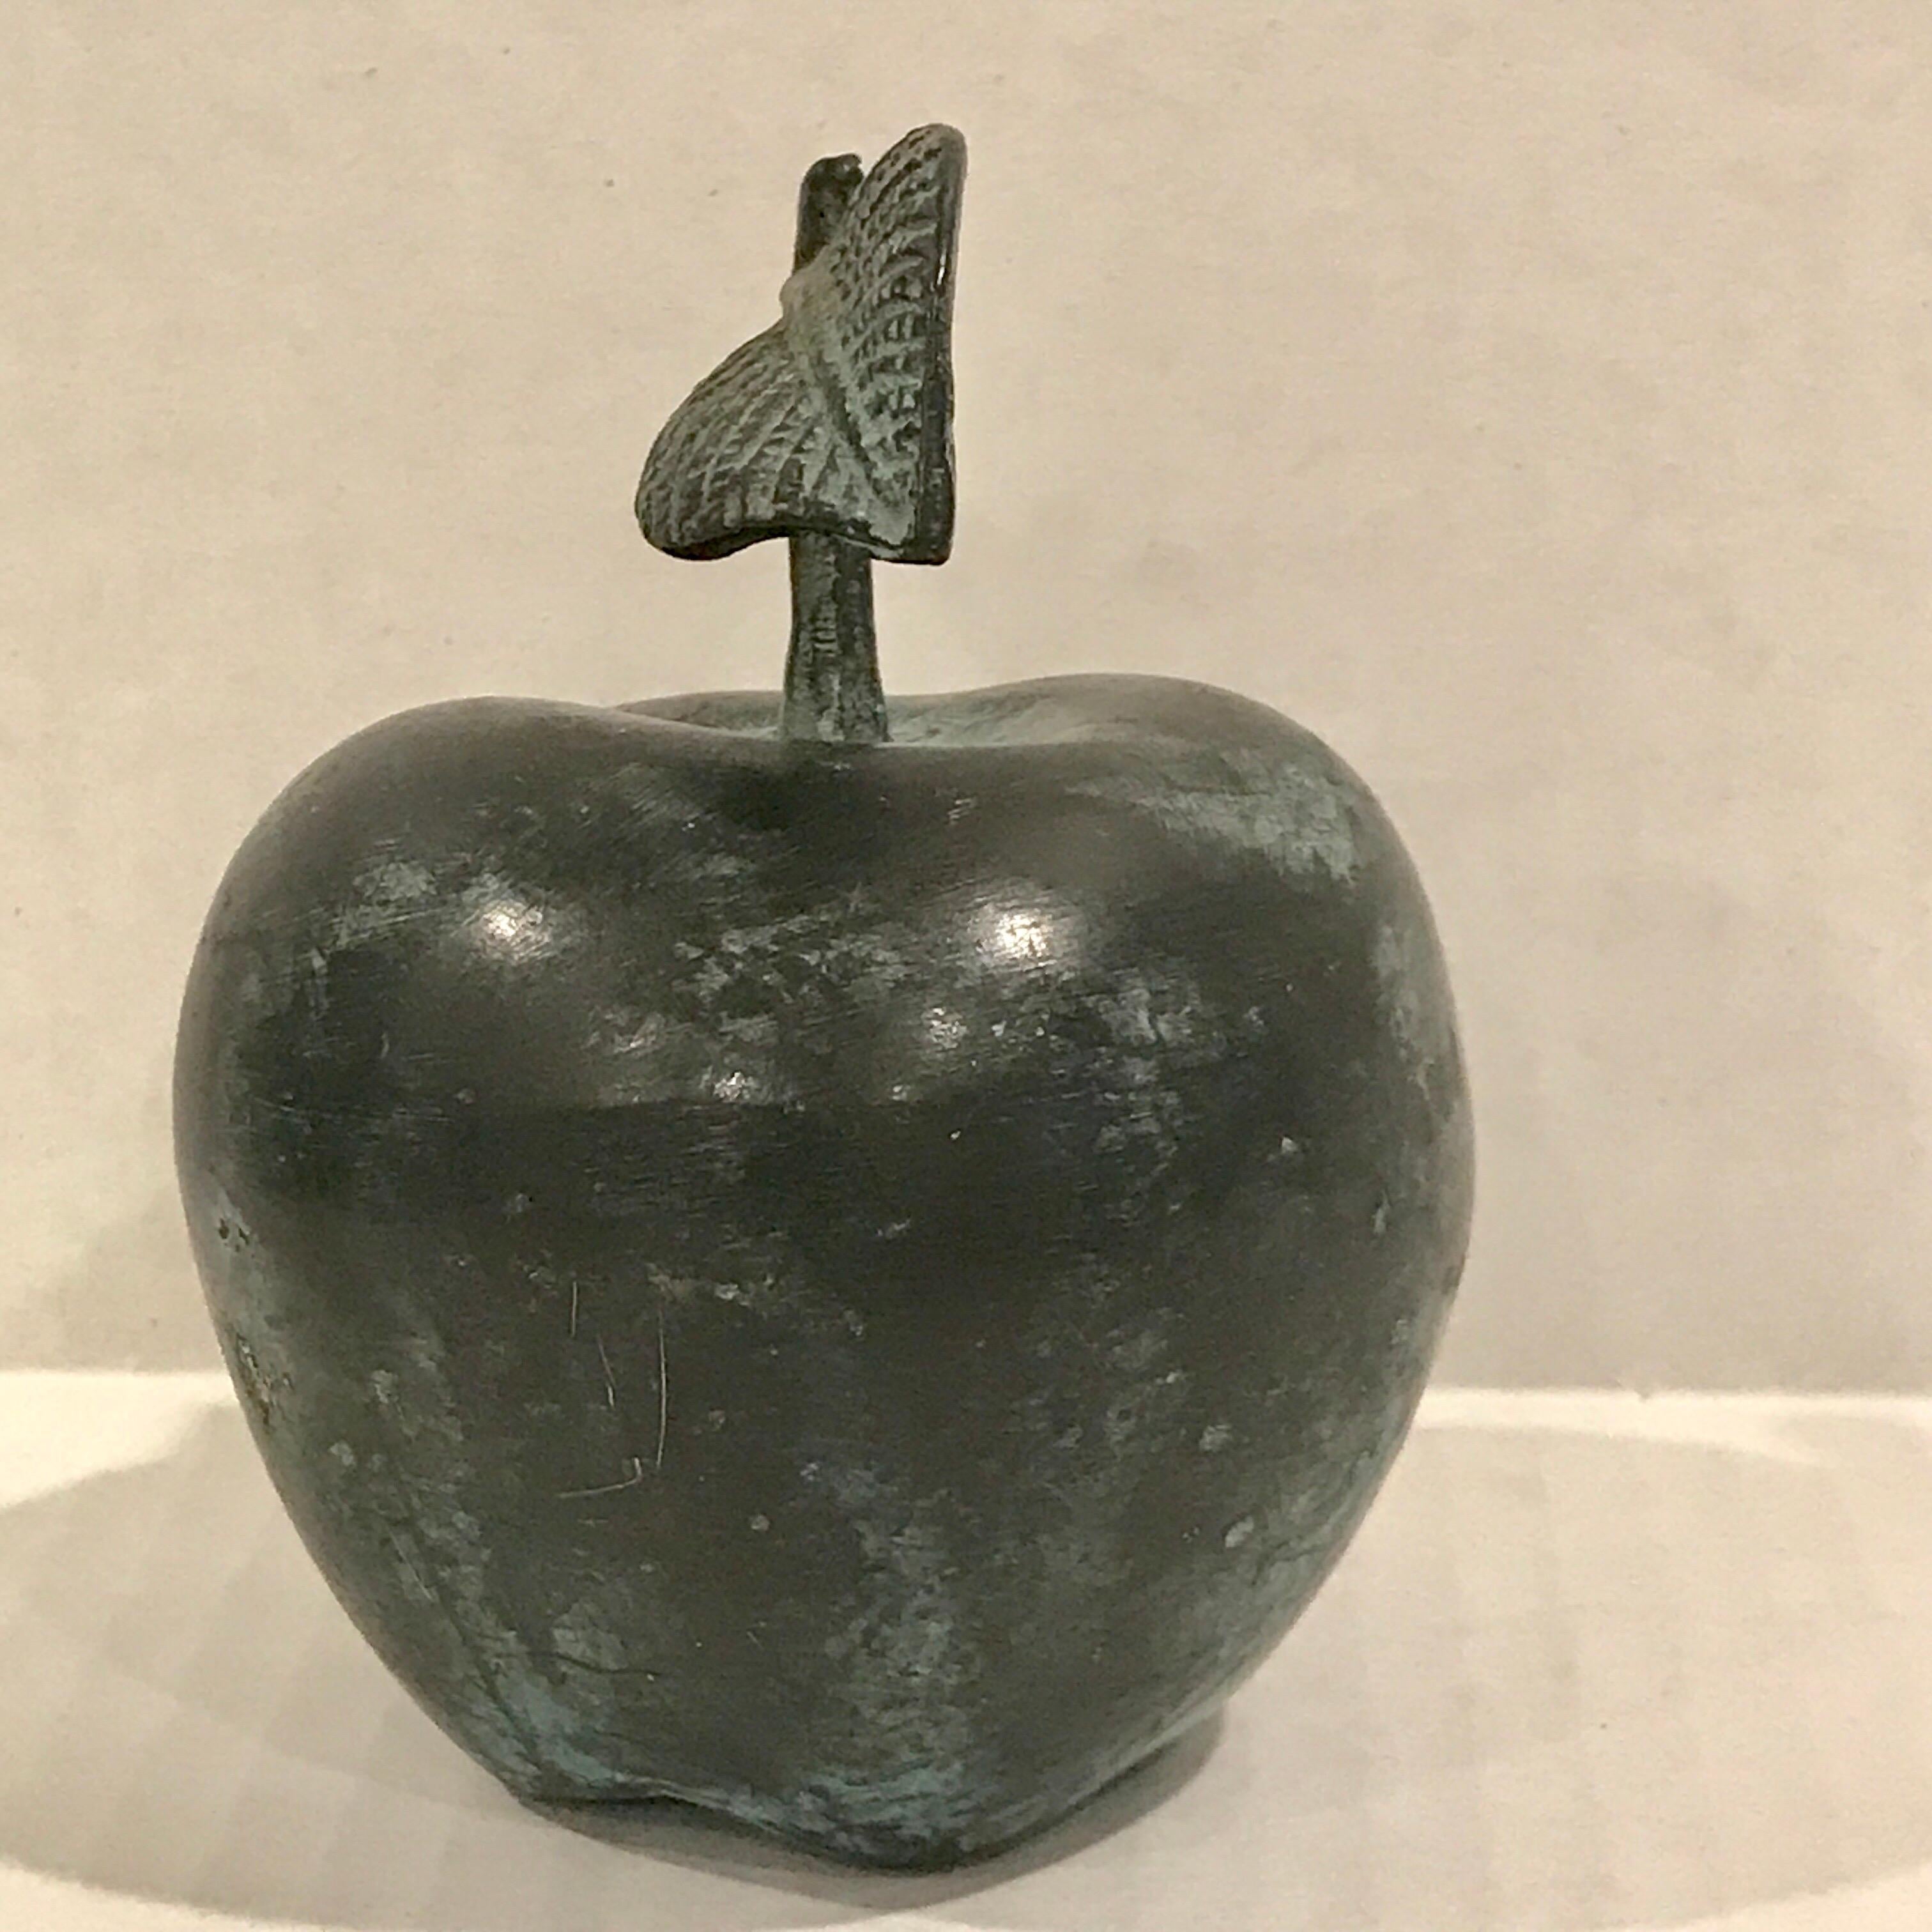 Patinated Midcentury Verdigris Bronze Apple Sculpture